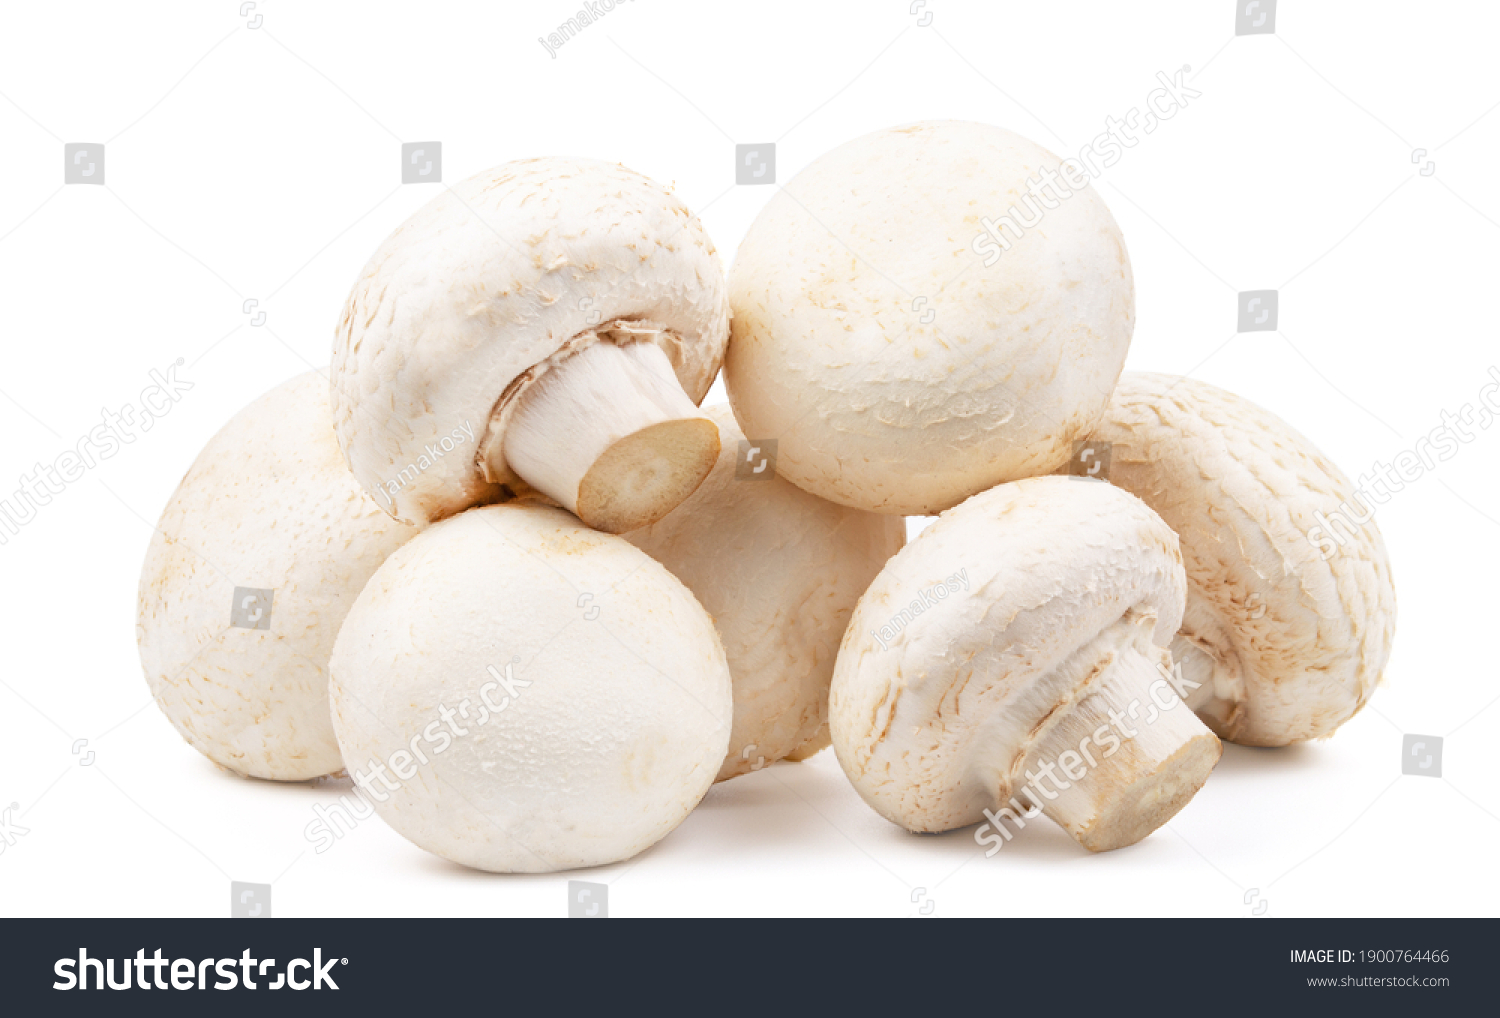 group of mushroom isolated on white background #1900764466